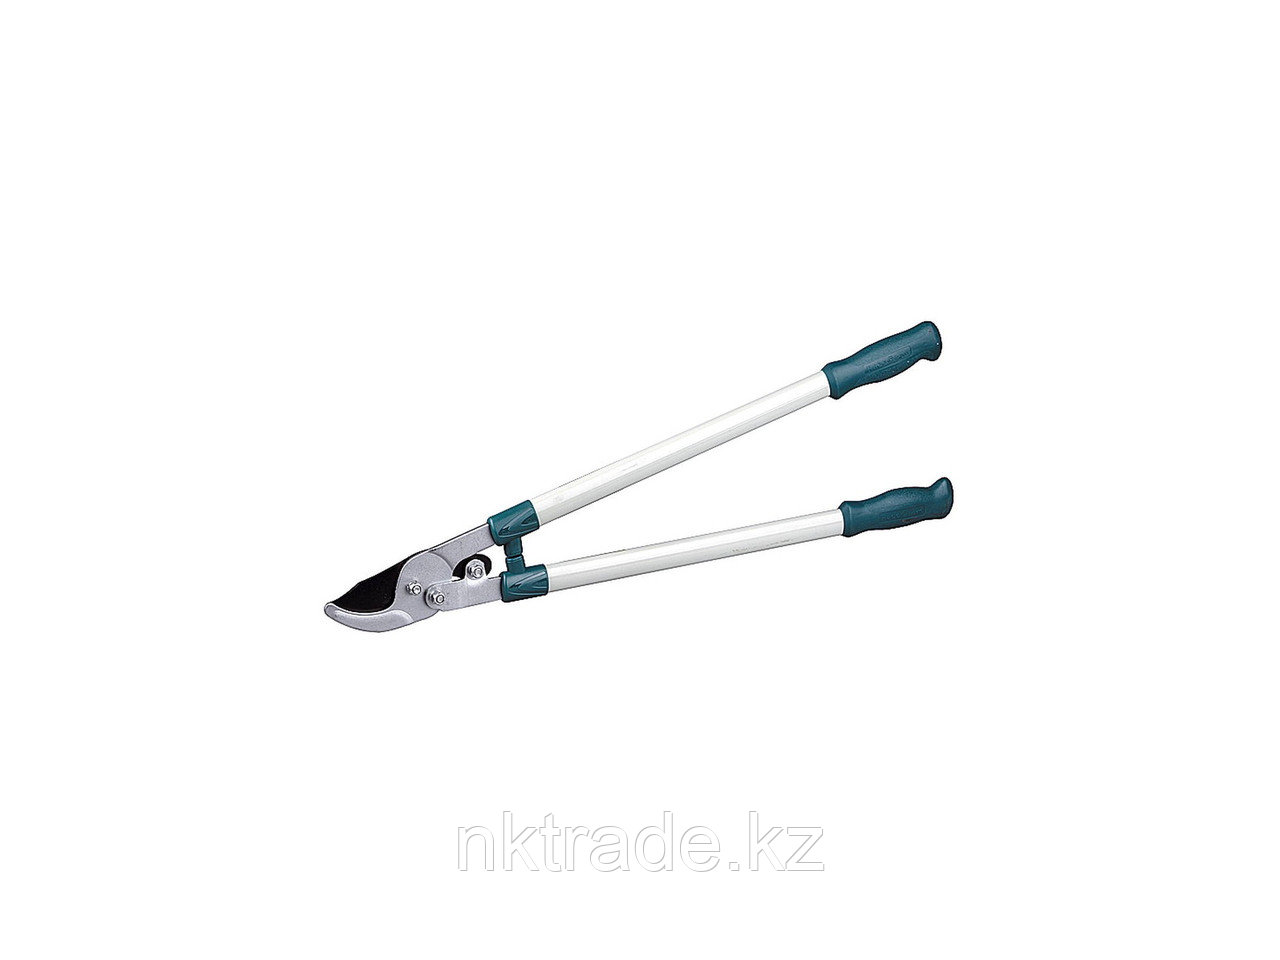 Сучкорез RACO со стальными ручками, 2-рычажный, рез до 40мм, 700мм 4212-53/248